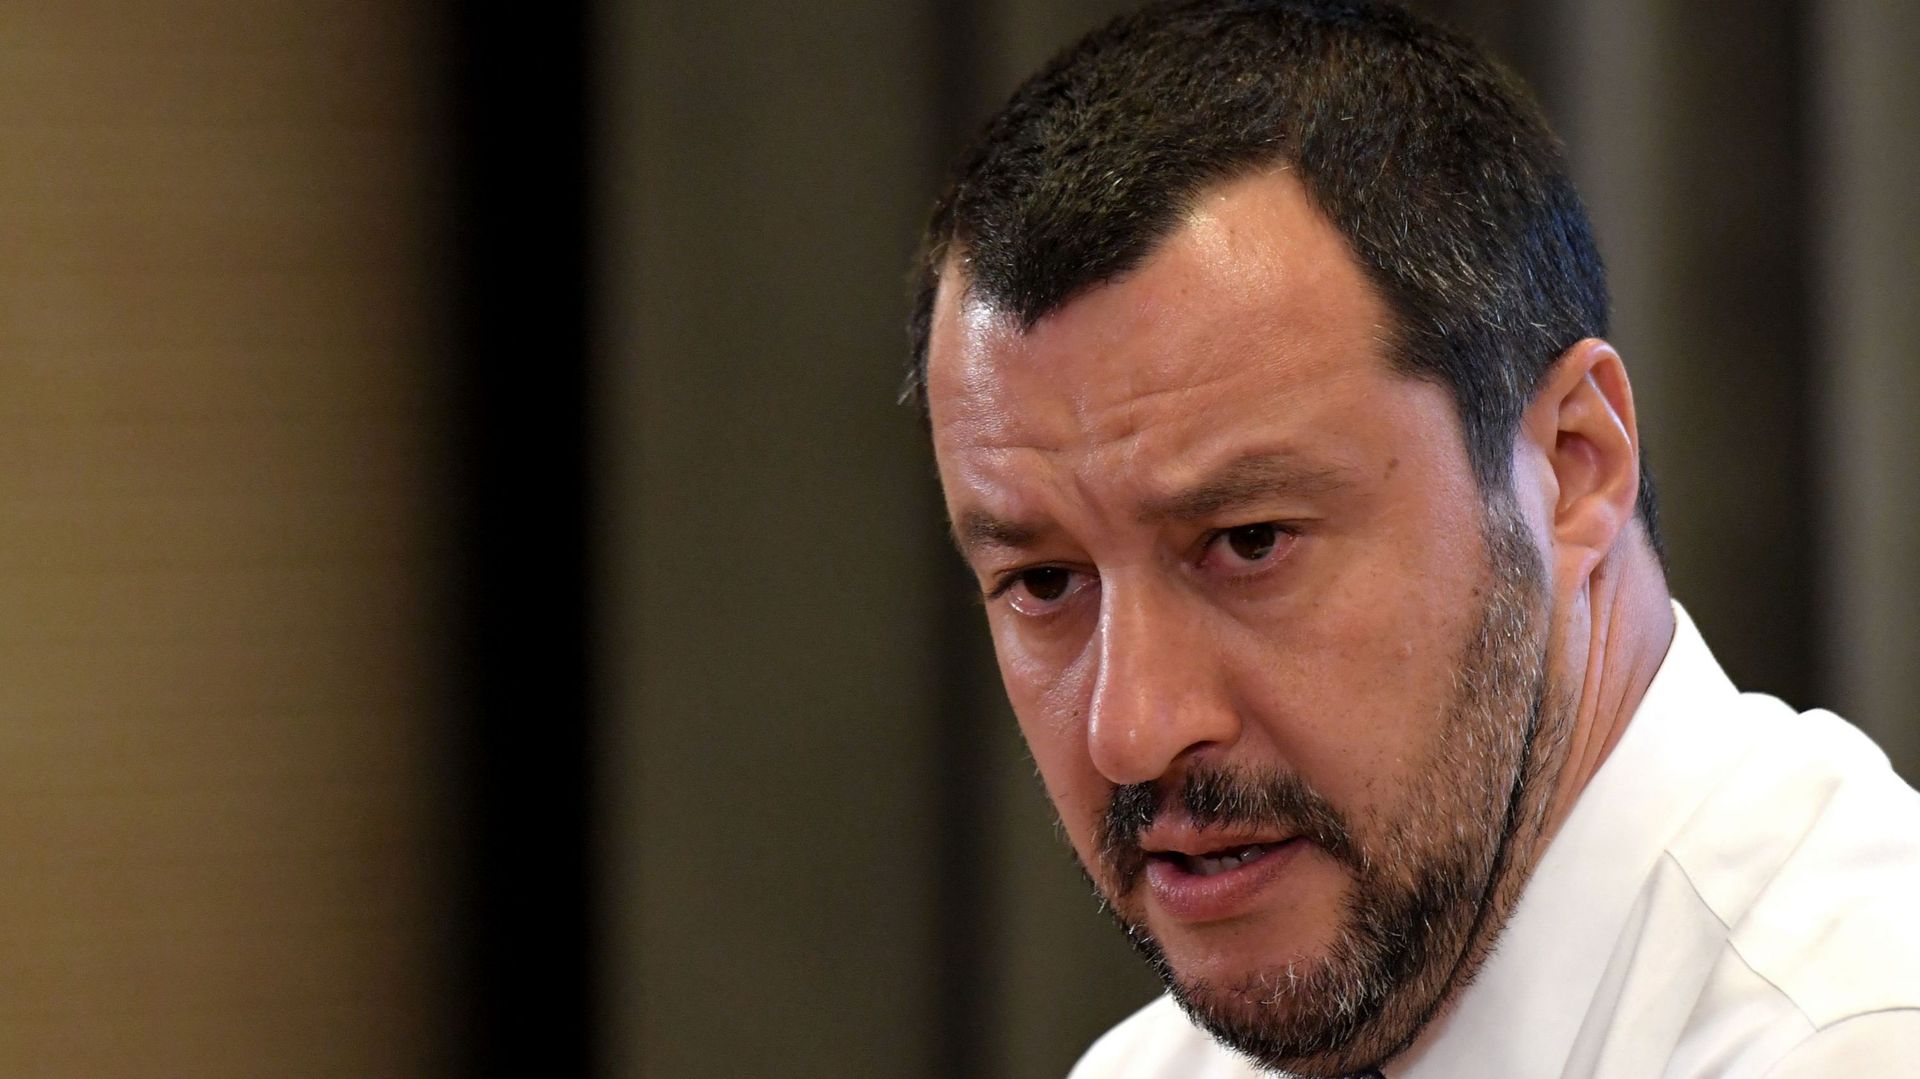 "Les ports seront fermés tout l'été", a affirmé Matteo Salvini. Il a ajouté que l'interdiction concernait non seulement l'accès aux ports mais aussi "les activités de fourniture de carburant aux ONG".